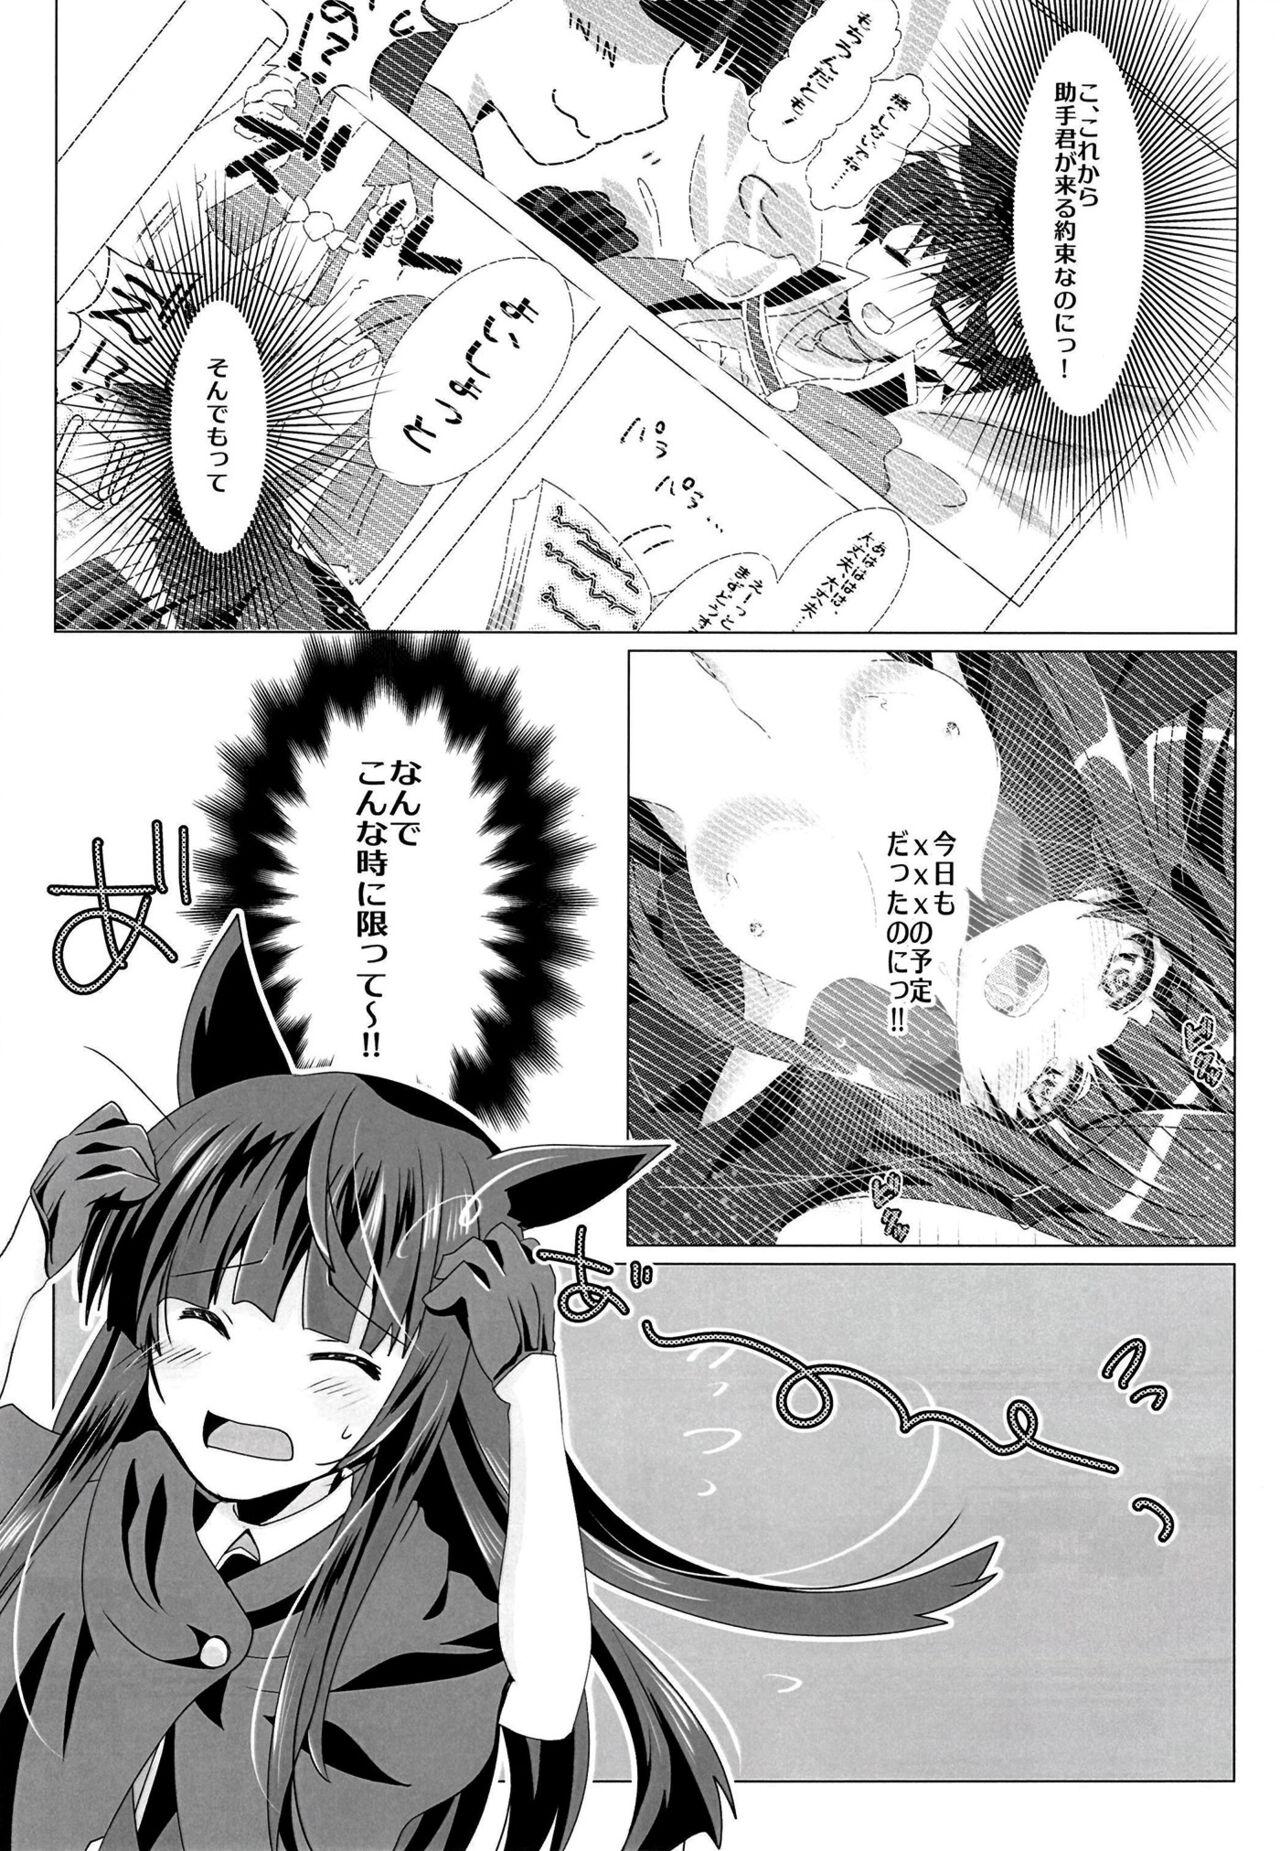 Reverse Himitsuno-mei tantei!! 2 - Princess connect Coroa - Page 7